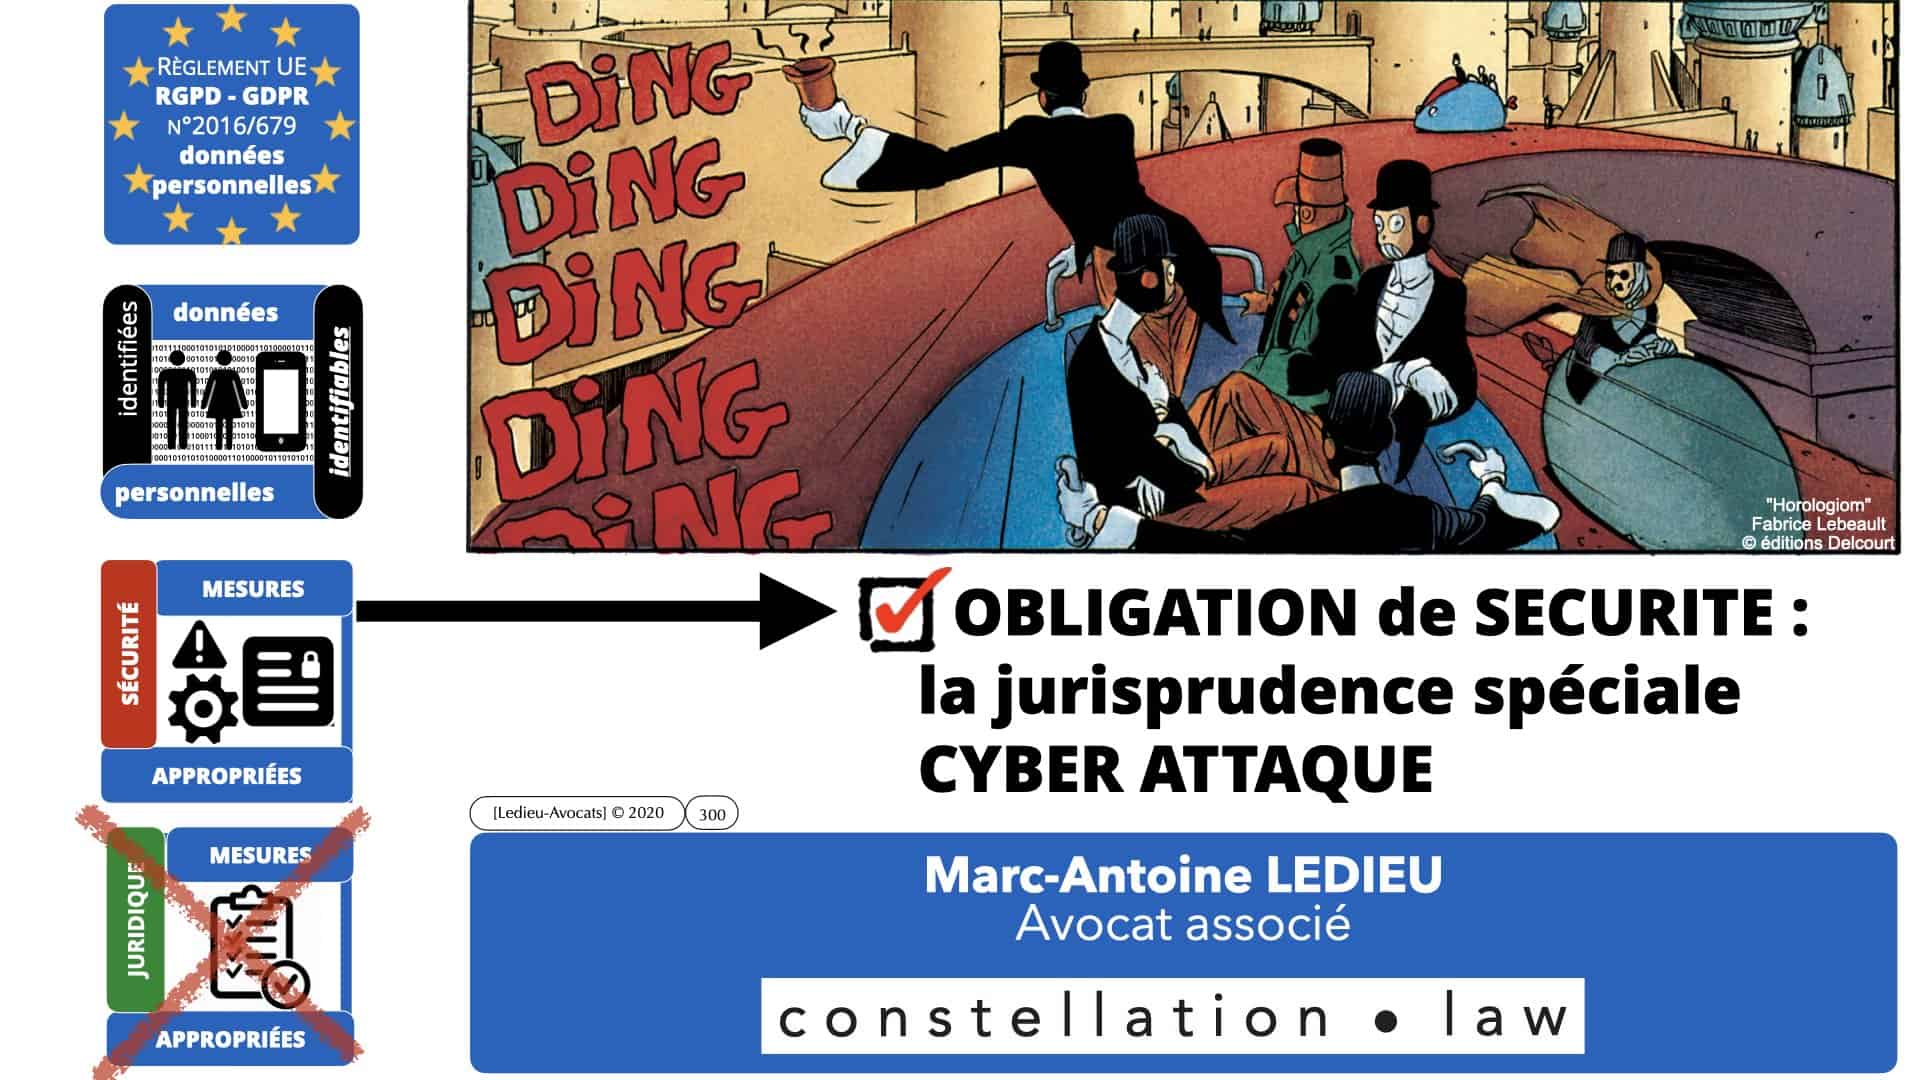 RGPD e-Privacy données personnelles jurisprudence formation Lamy Les Echos 10-02-2021 ©Ledieu-Avocats.300